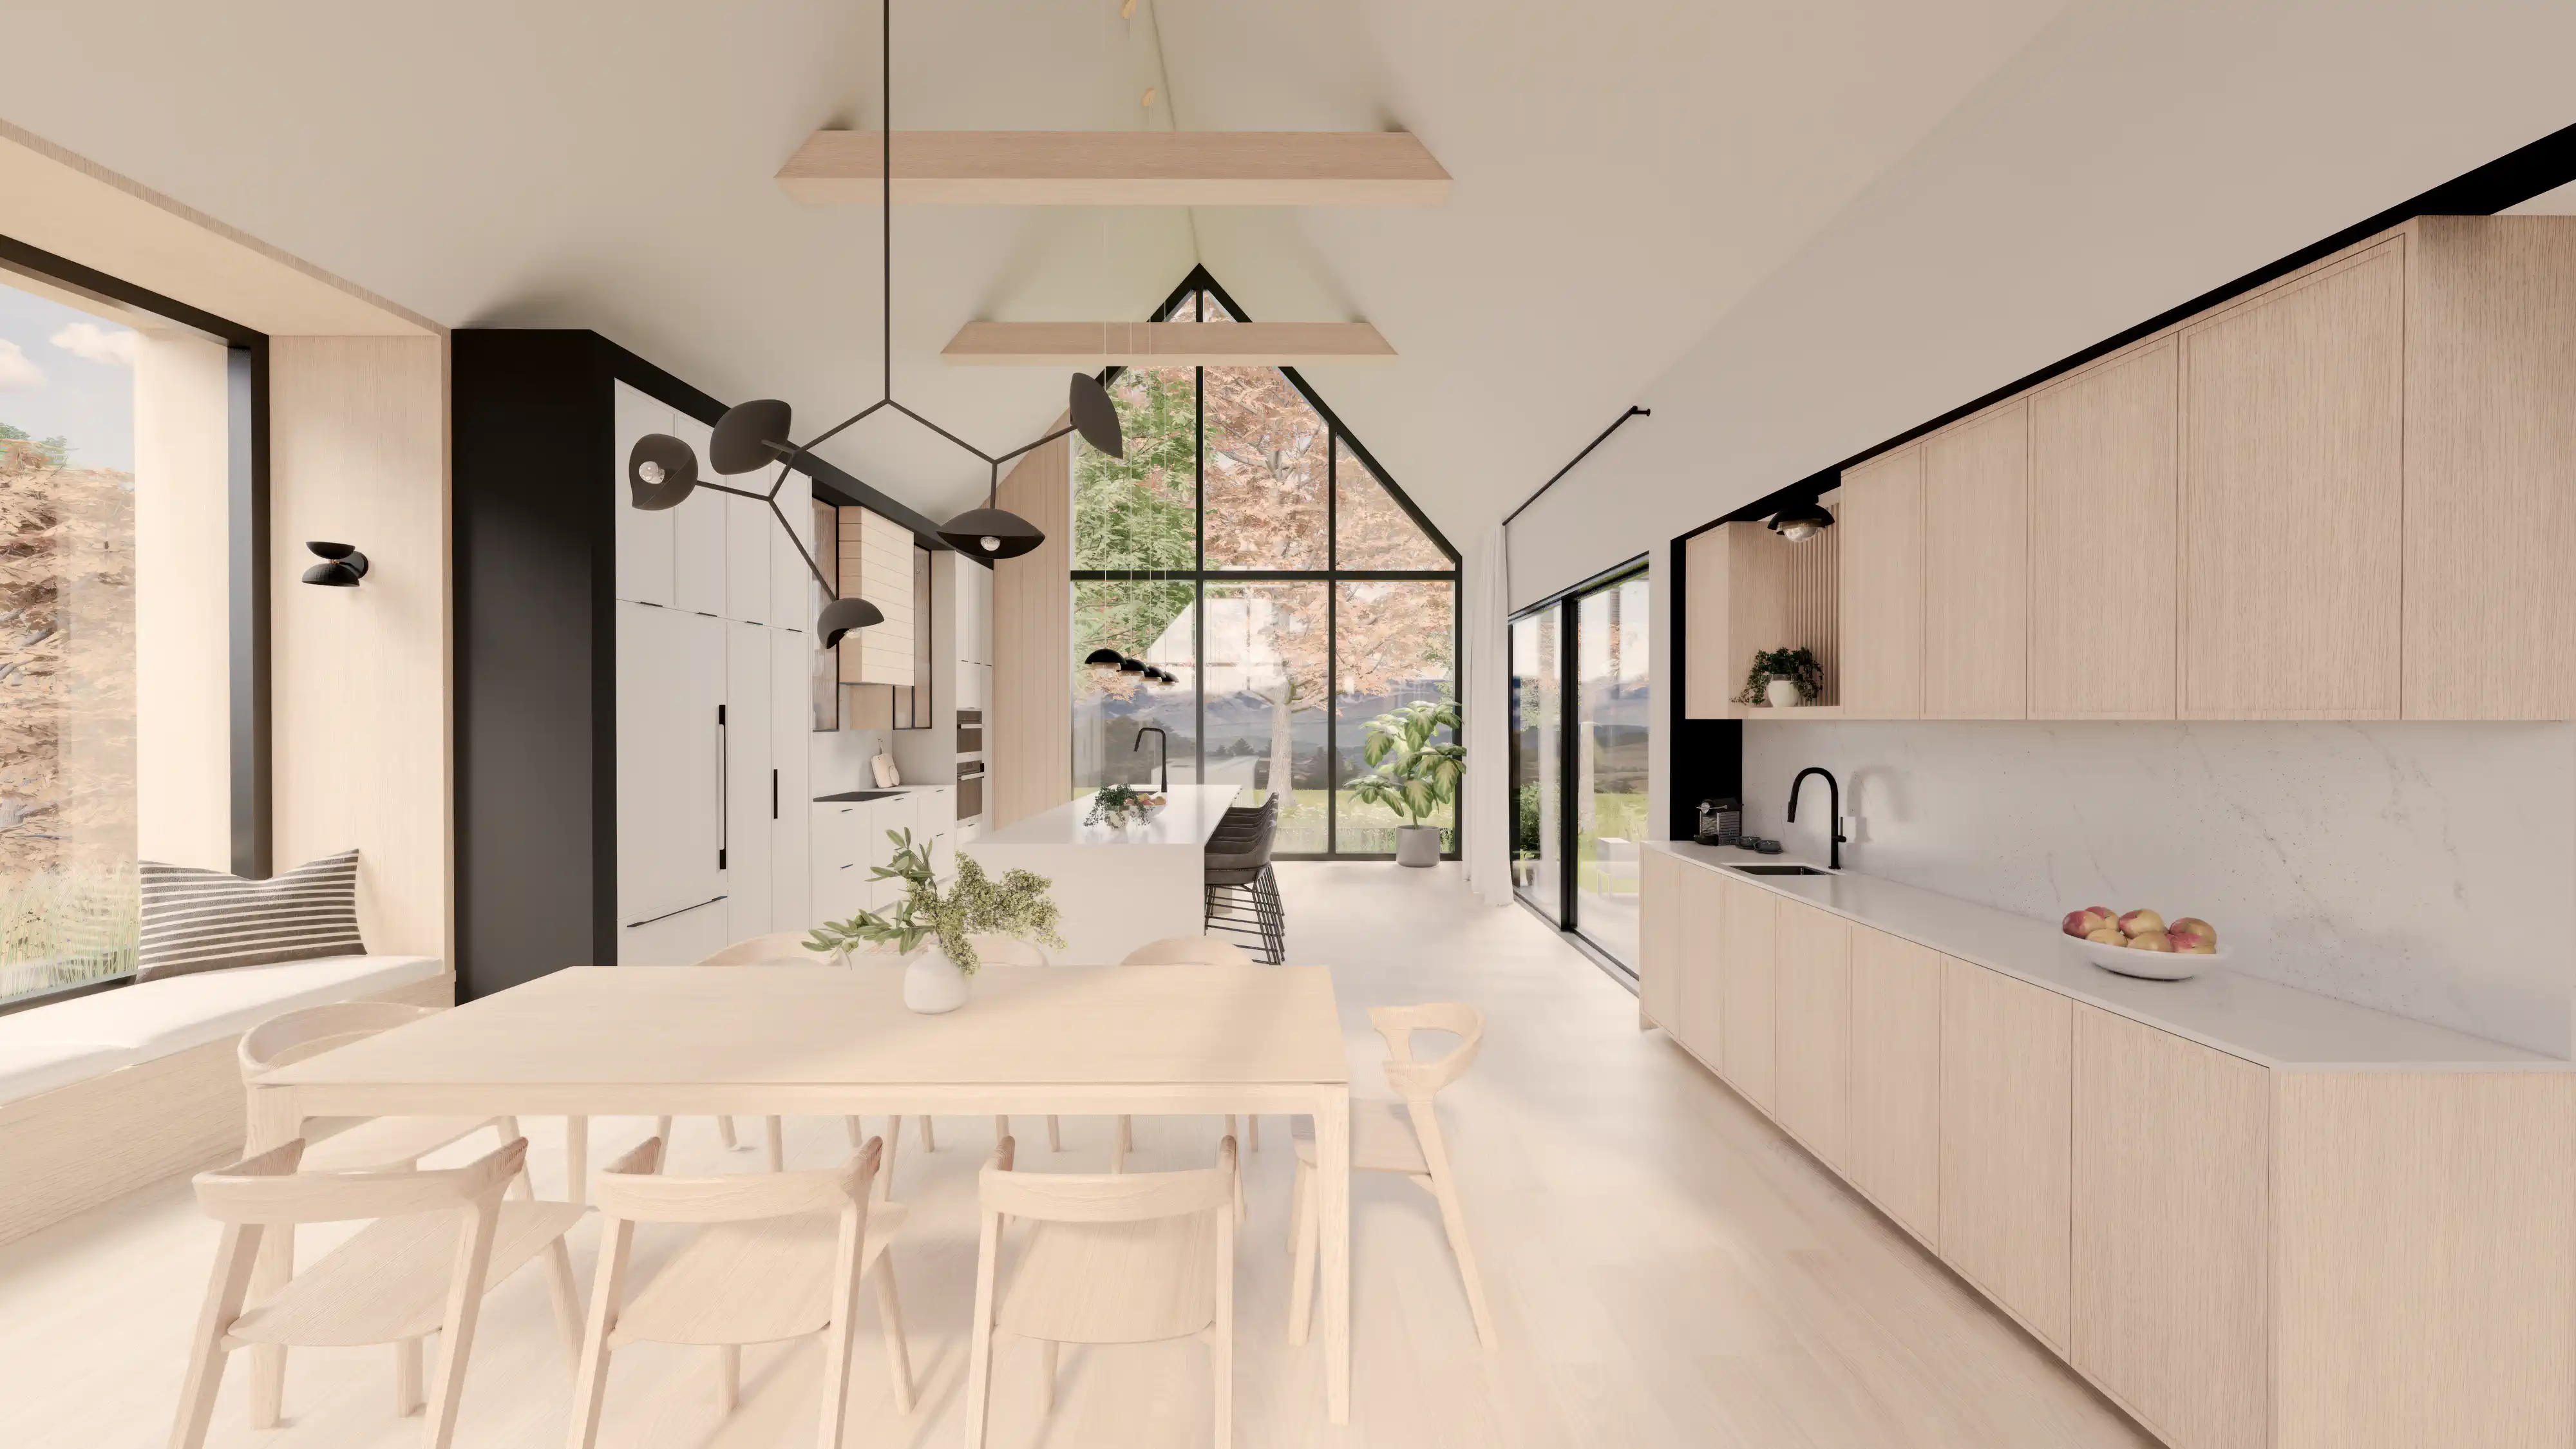 Cuisine et salle à manger modernes avec finitions en bois, accents noirs élégants et grandes fenêtres panoramiques donnant sur la nature, intérieur signé Sarah Brown Design